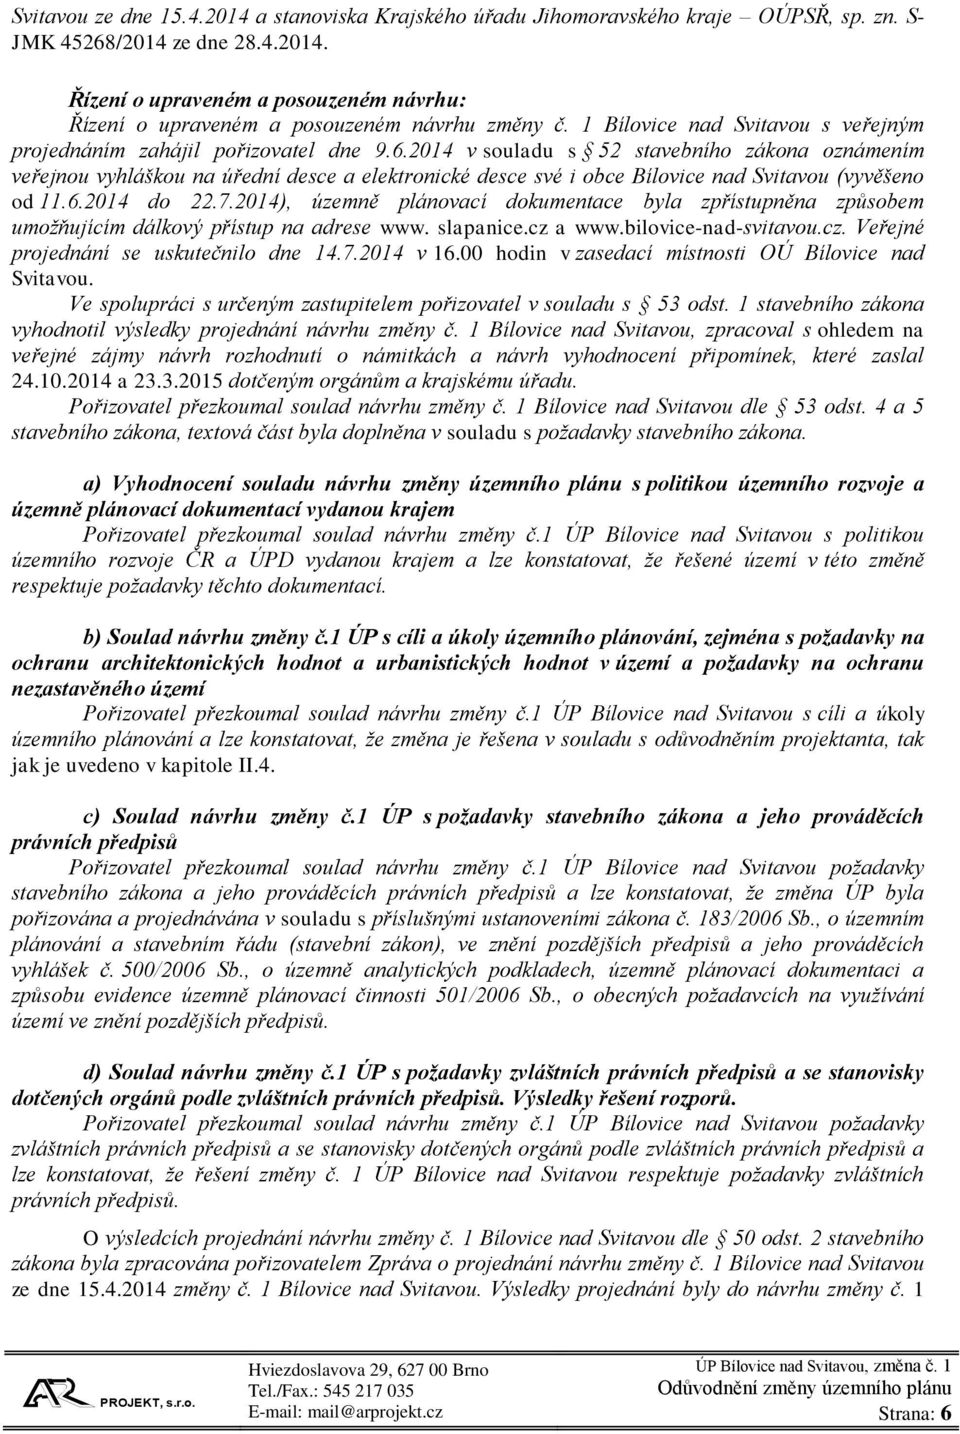 2014 v souladu s 52 stavebního zákona oznámením veřejnou vyhláškou na úřední desce a elektronické desce své i obce Bílovice nad Svitavou (vyvěšeno od 11.6.2014 do 22.7.